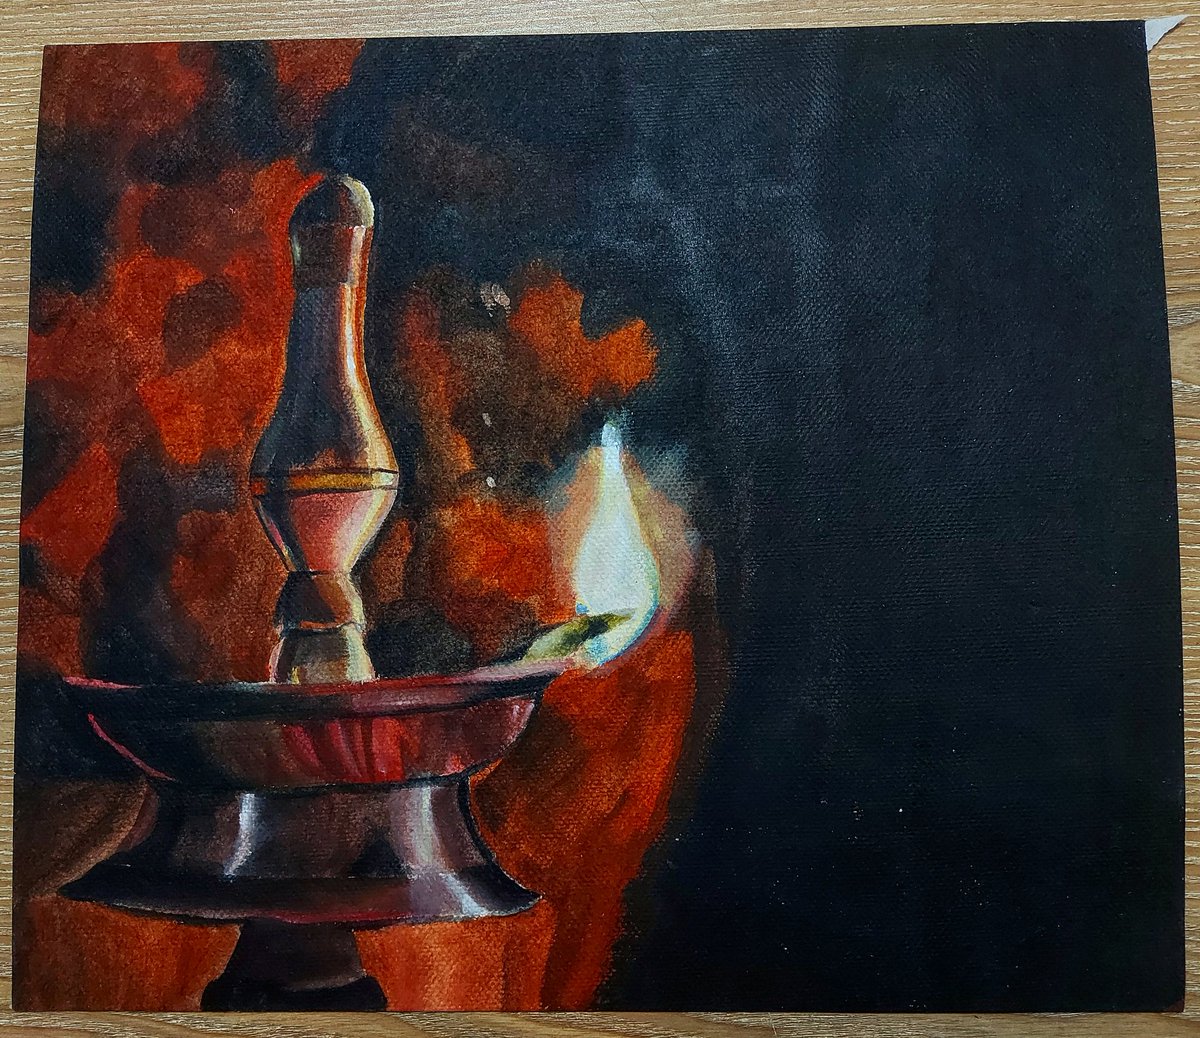 A fire to Kindle🔥
#bangladeshiartist #artwork #artlover #bangladeshiartists #painting #acrylicpainting #acrylicart
instagram.com/p/CKbtmFwjXXC/…